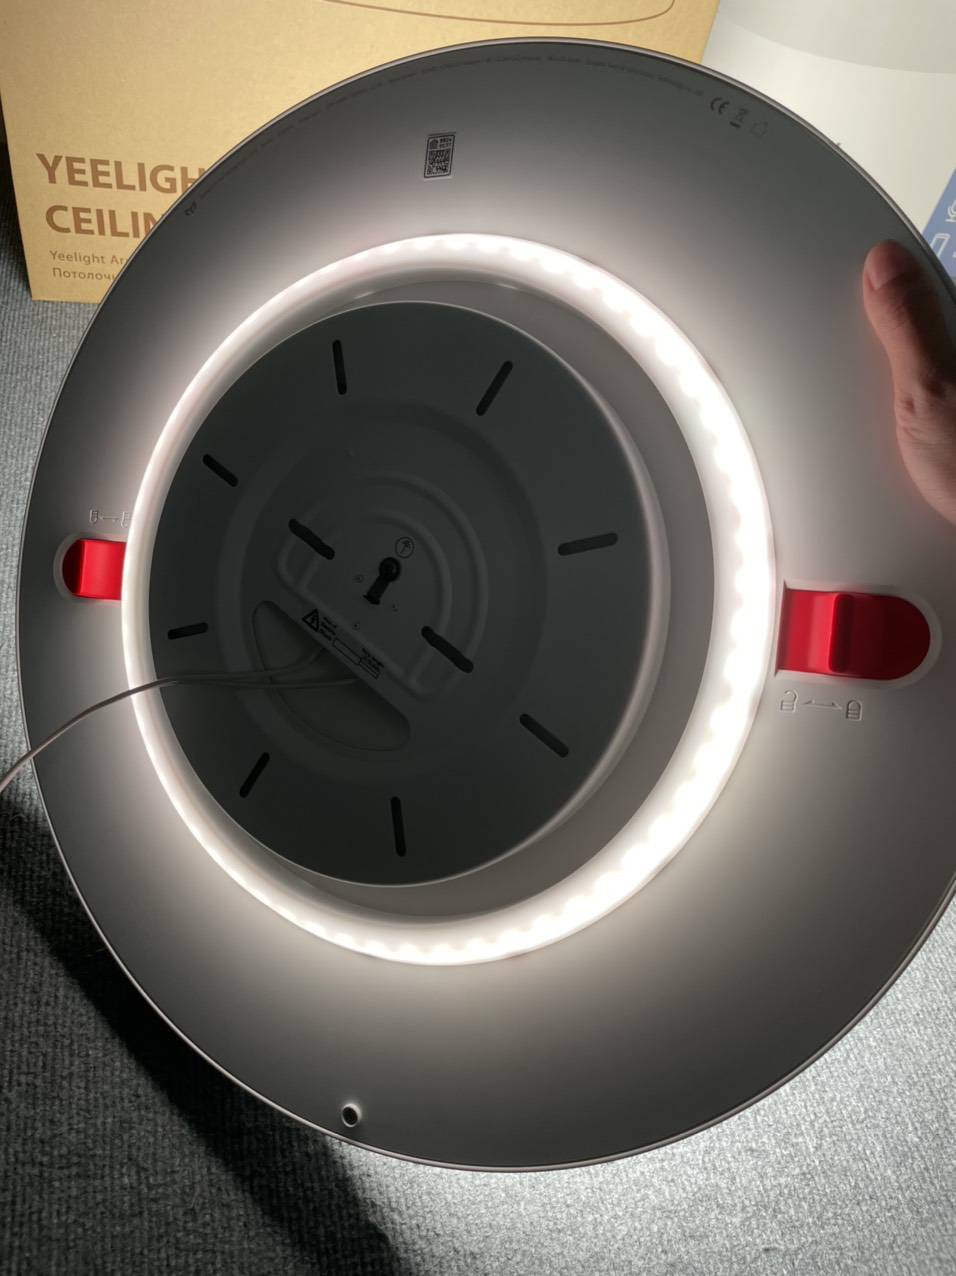 Đèn ốp trần Yeelight Arwen C-Series 450C/550C LED RGB hắt trần thông minh điều khiển bằng App - Hàng Chính Hãng